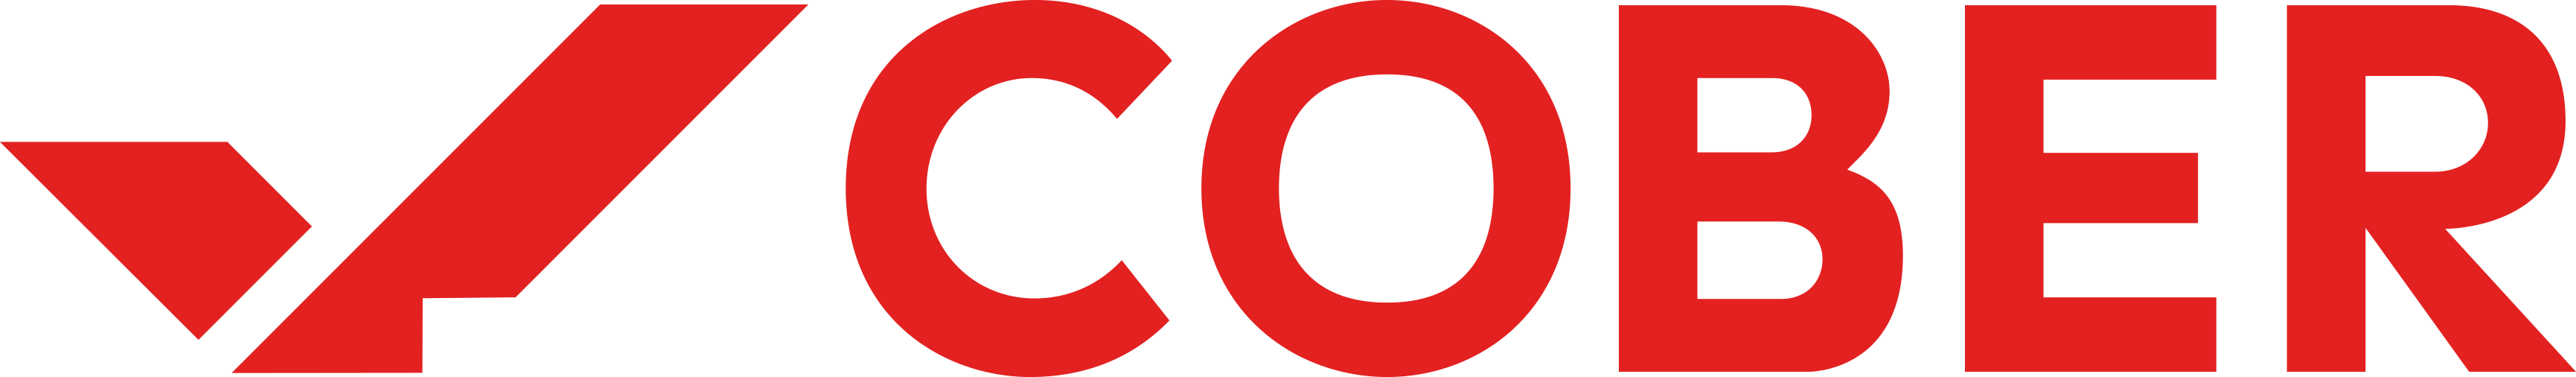 Logo-Cober-Milano